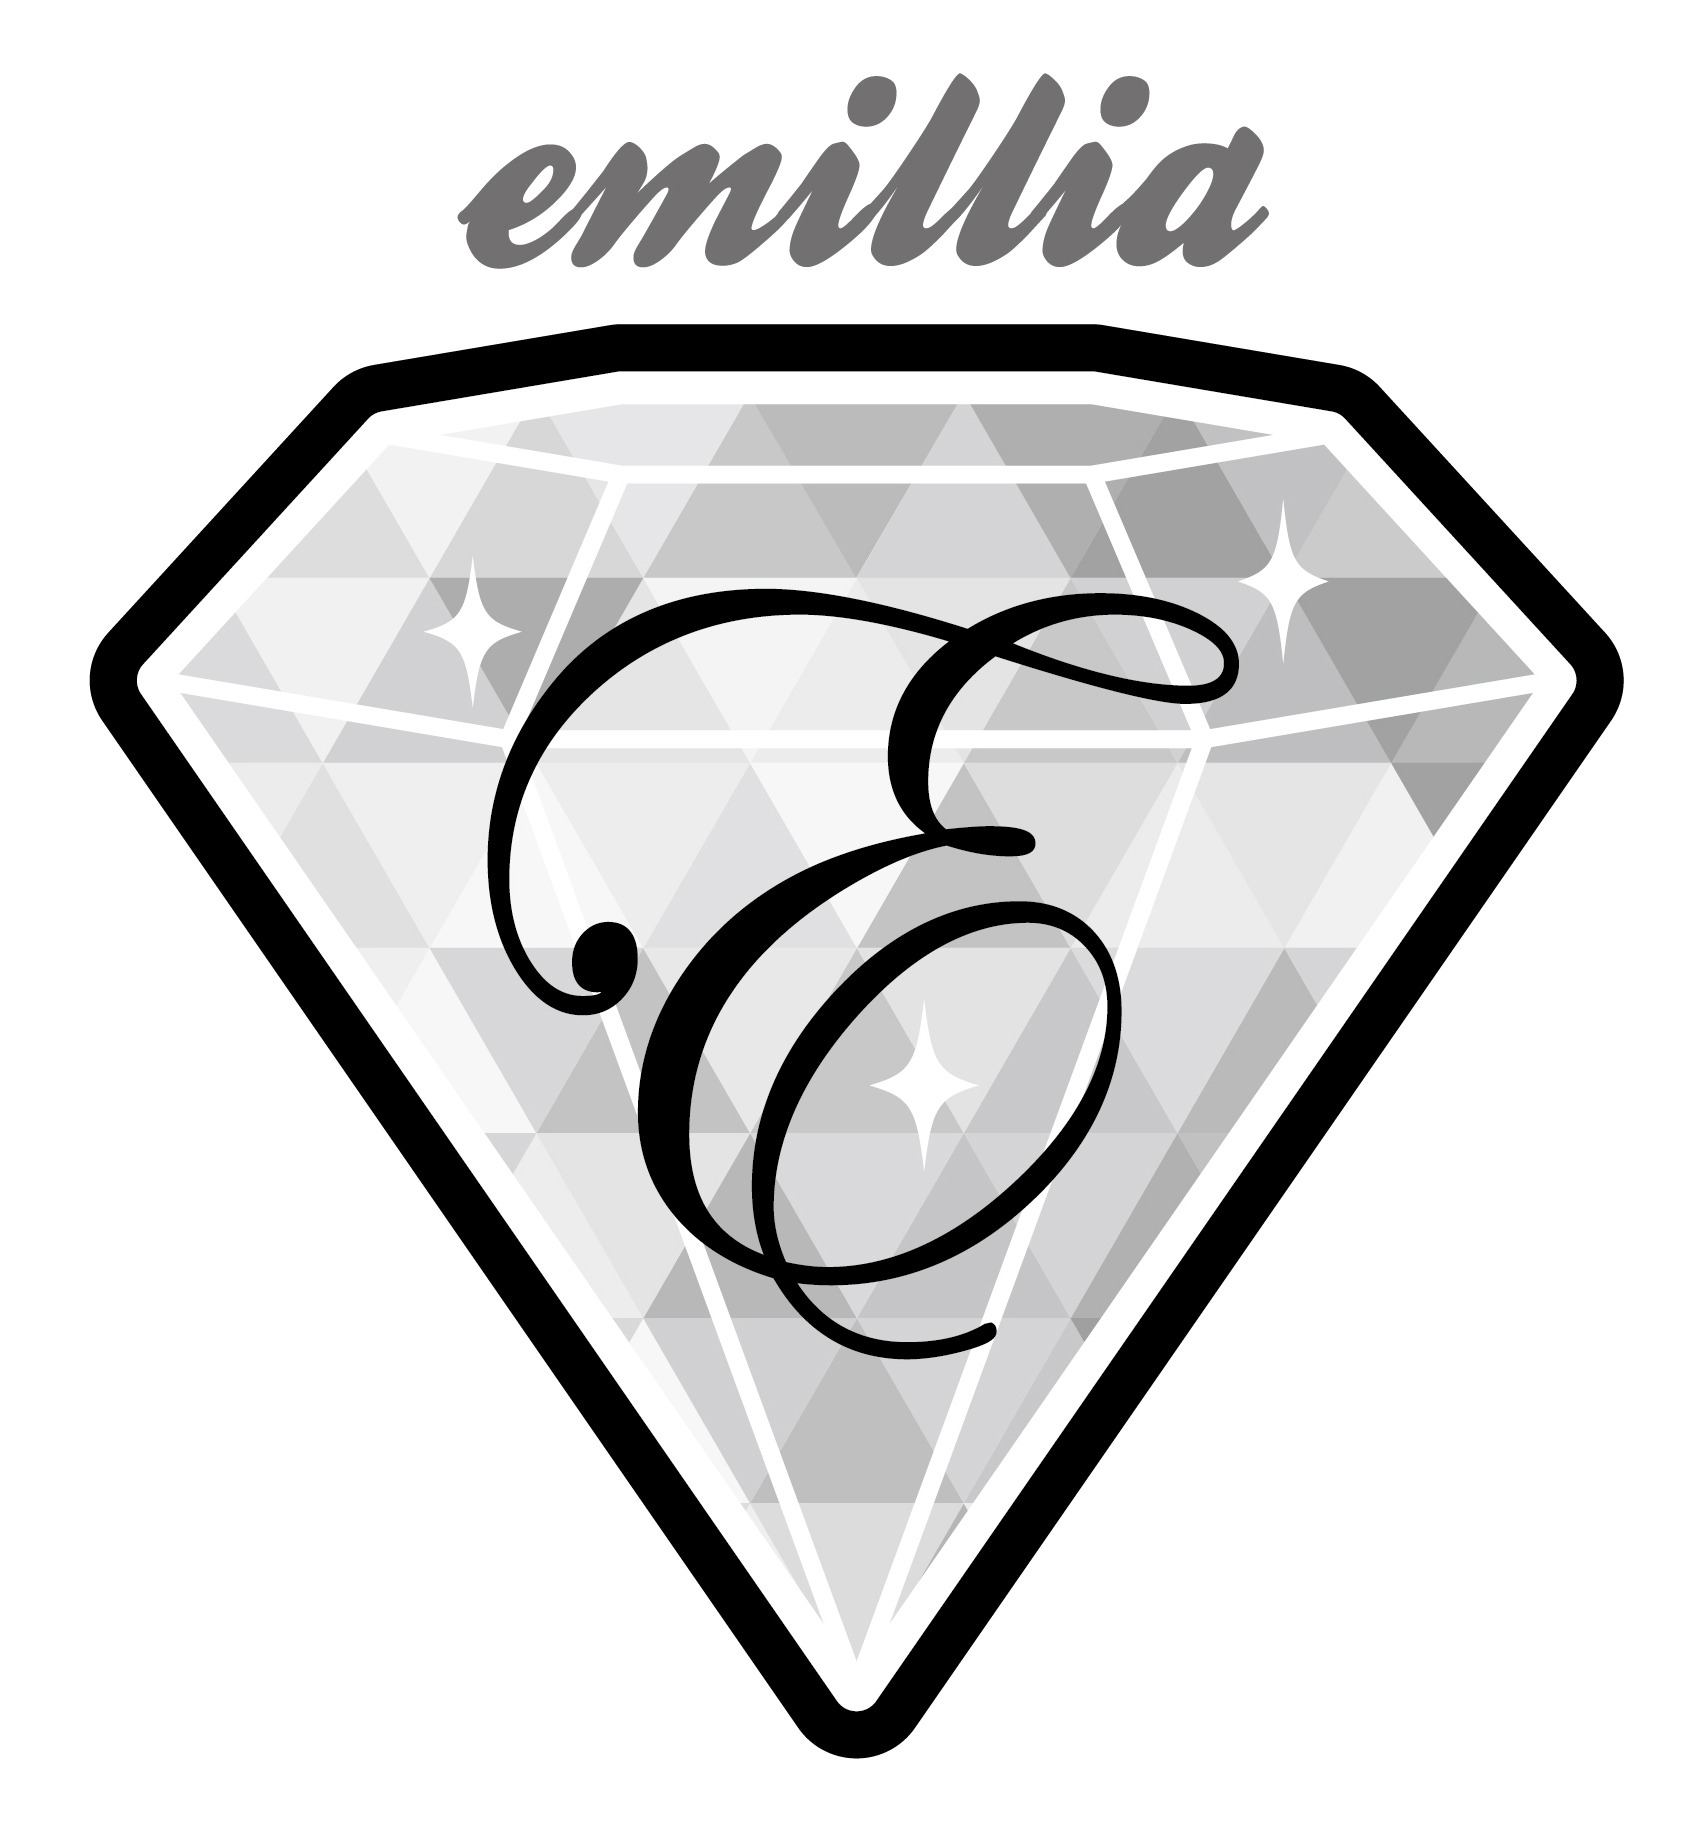 emillia